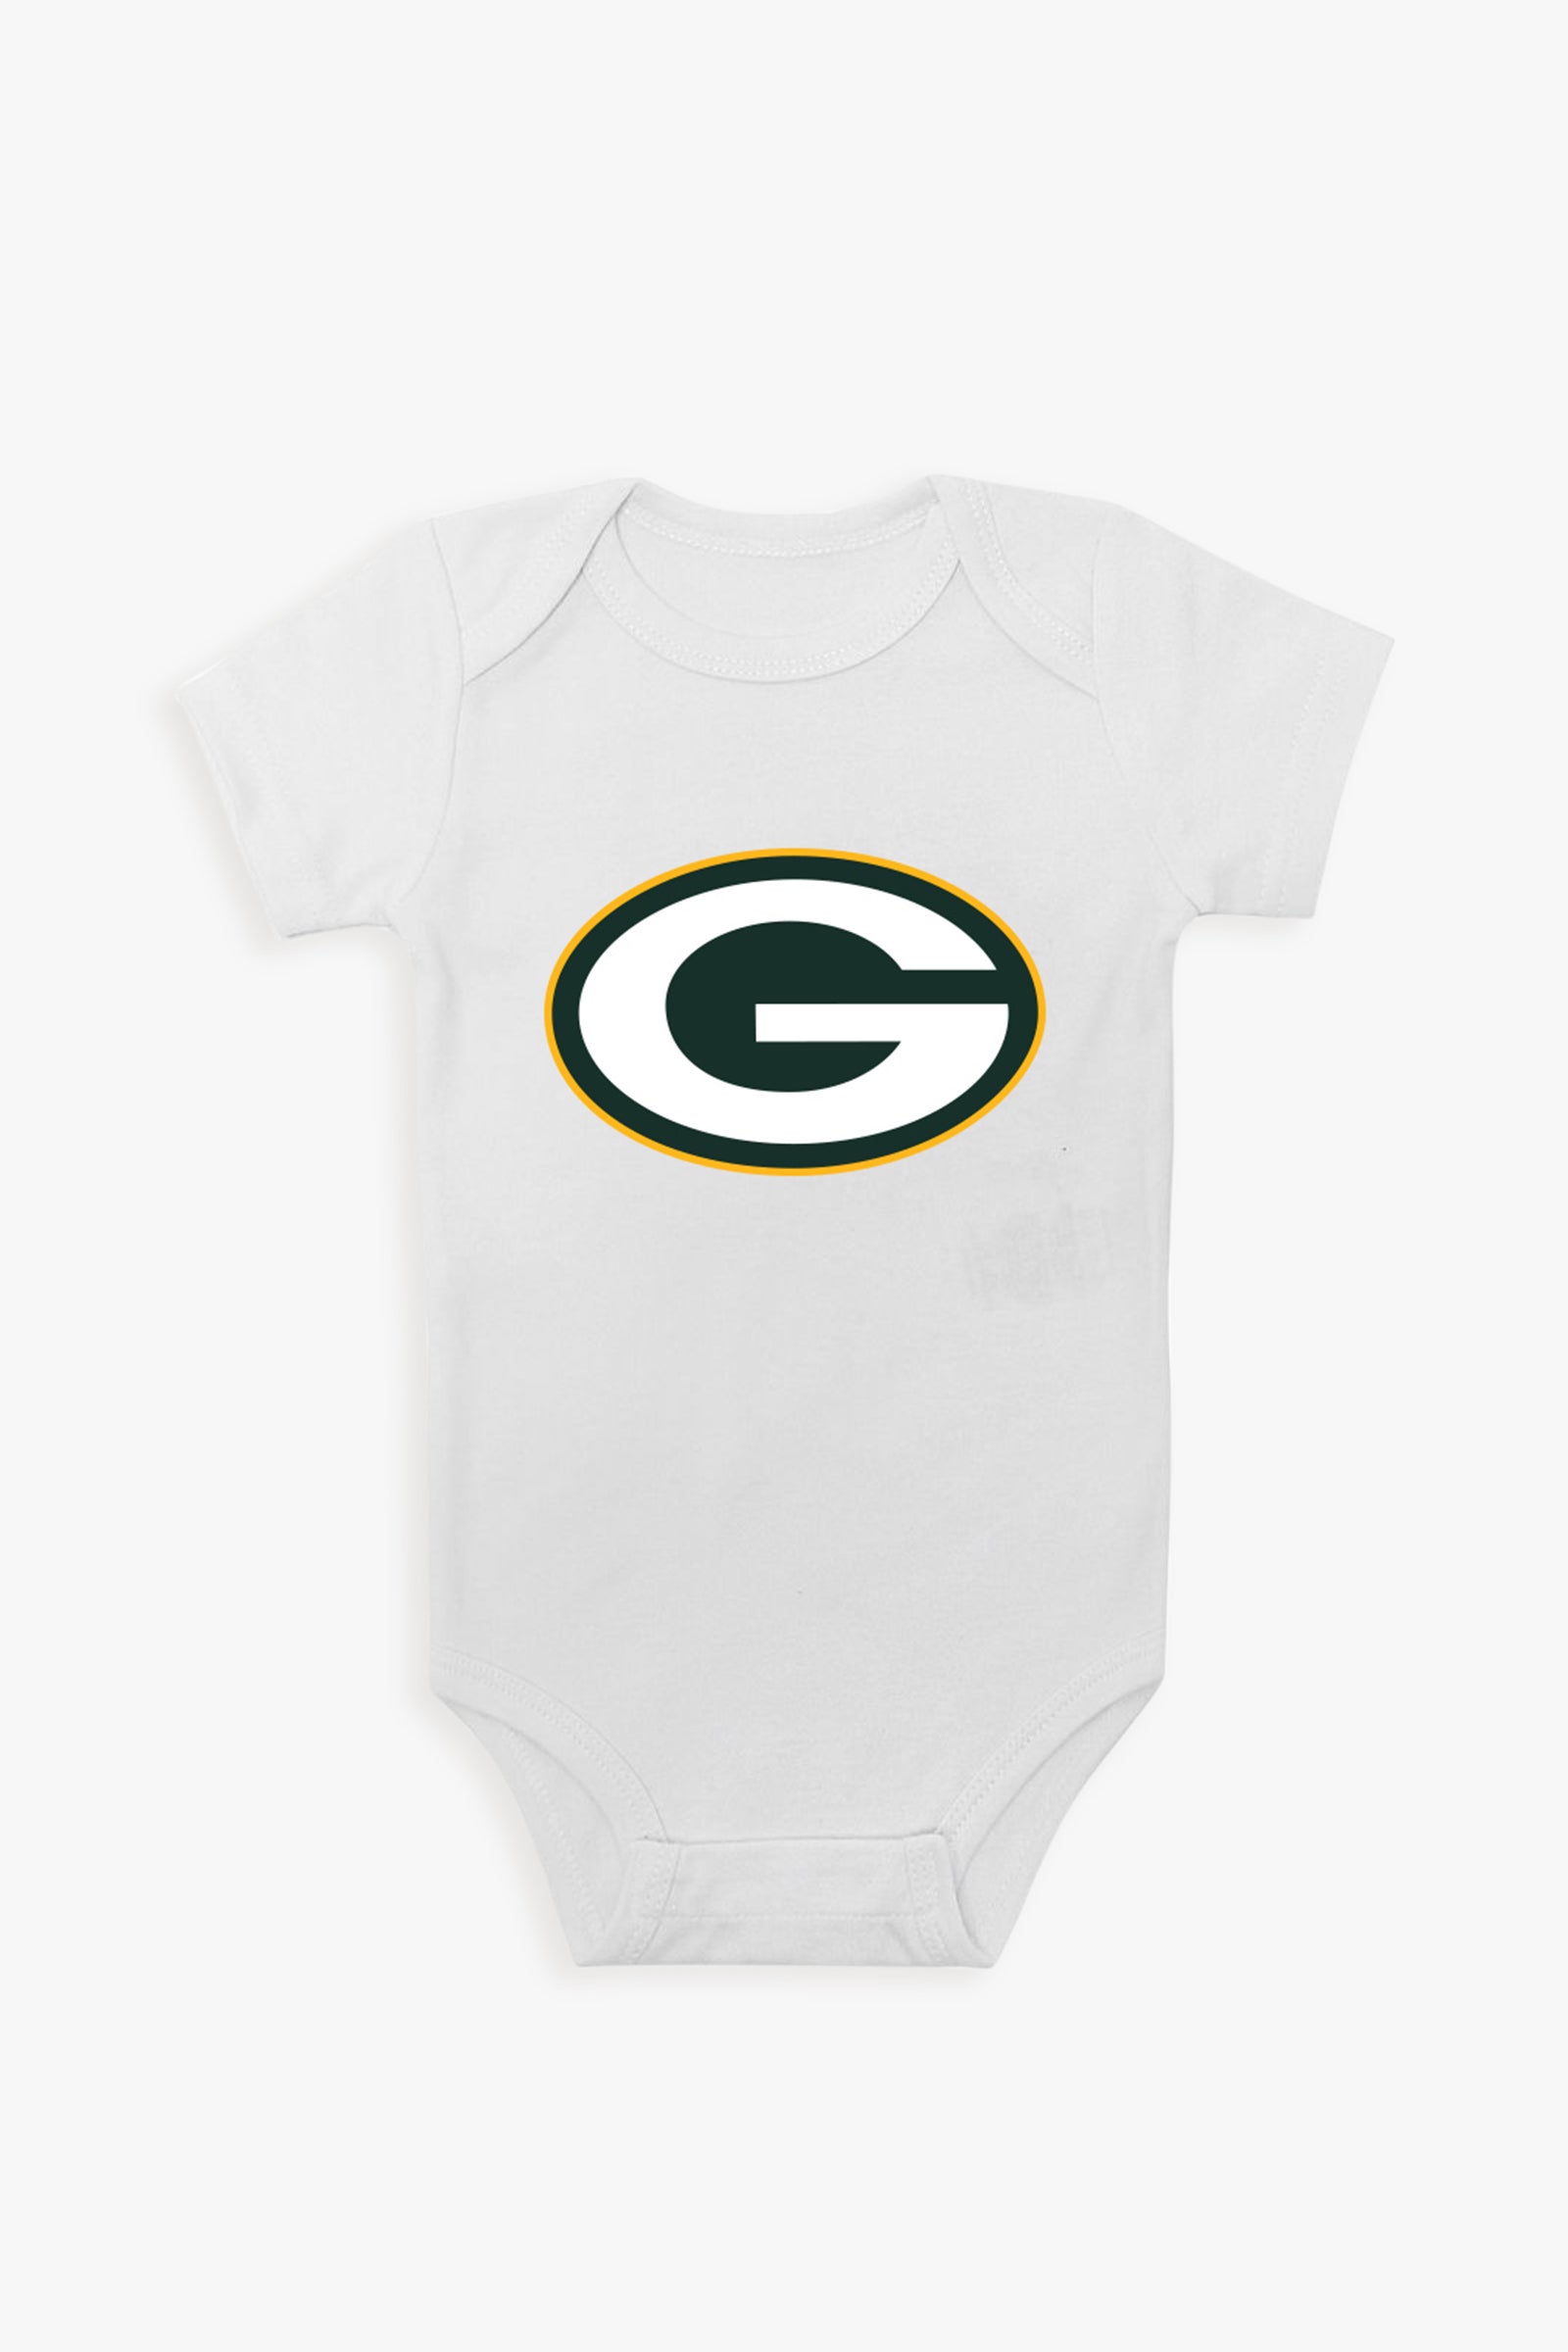 NFL White Baby Short-Sleeve Bodysuit - NFC Division